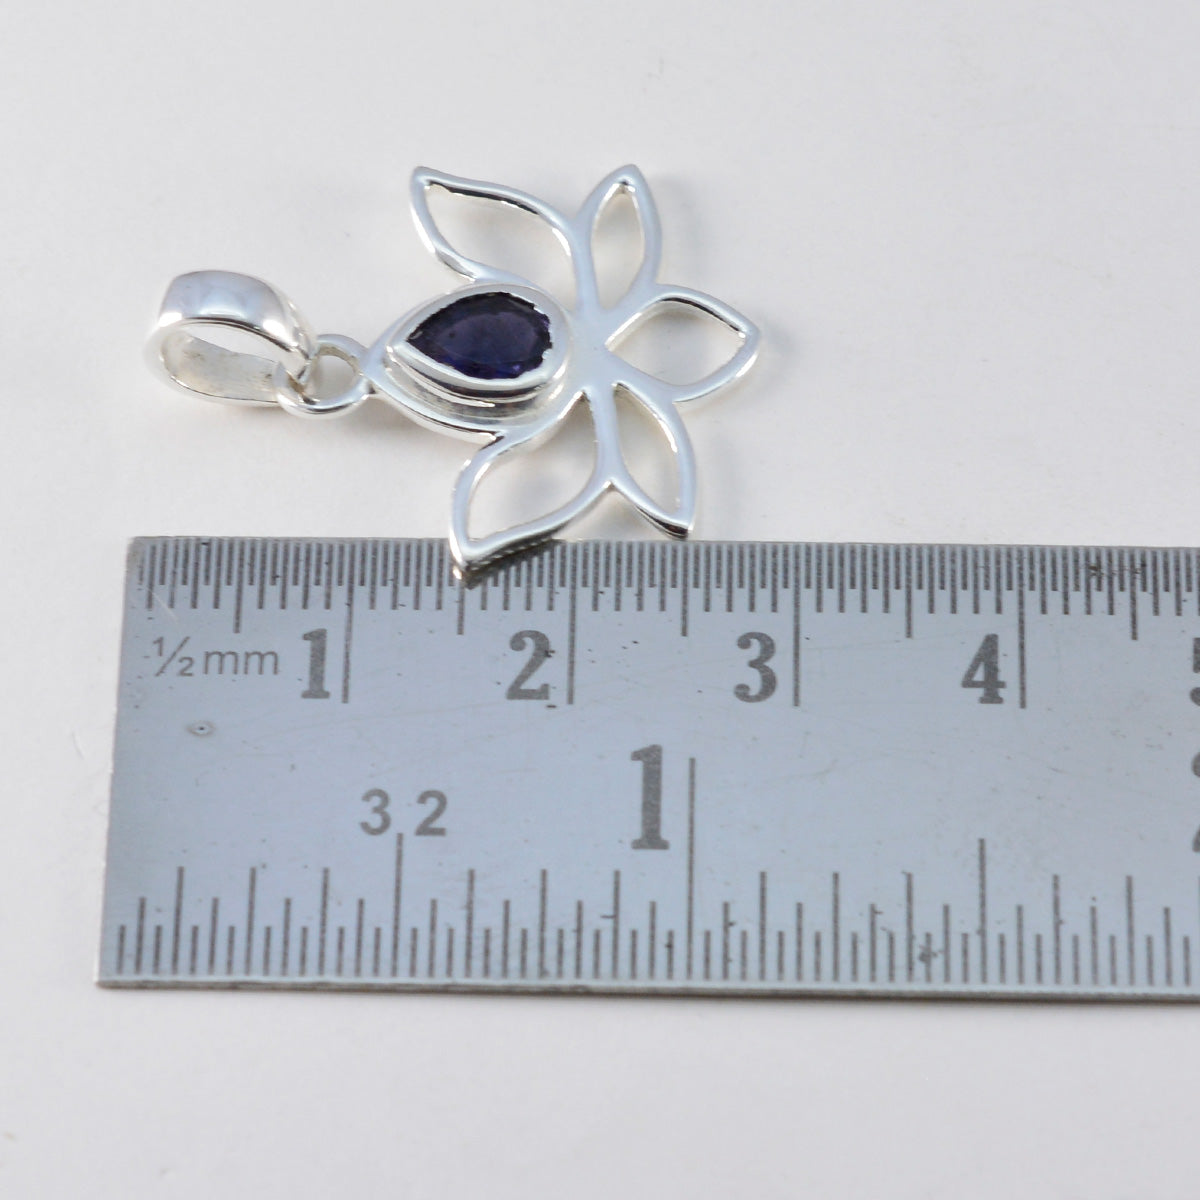 Riyo sierlijke edelsteen peer gefacetteerde blauwe ioliet sterling zilveren hanger cadeau voor vrouwen